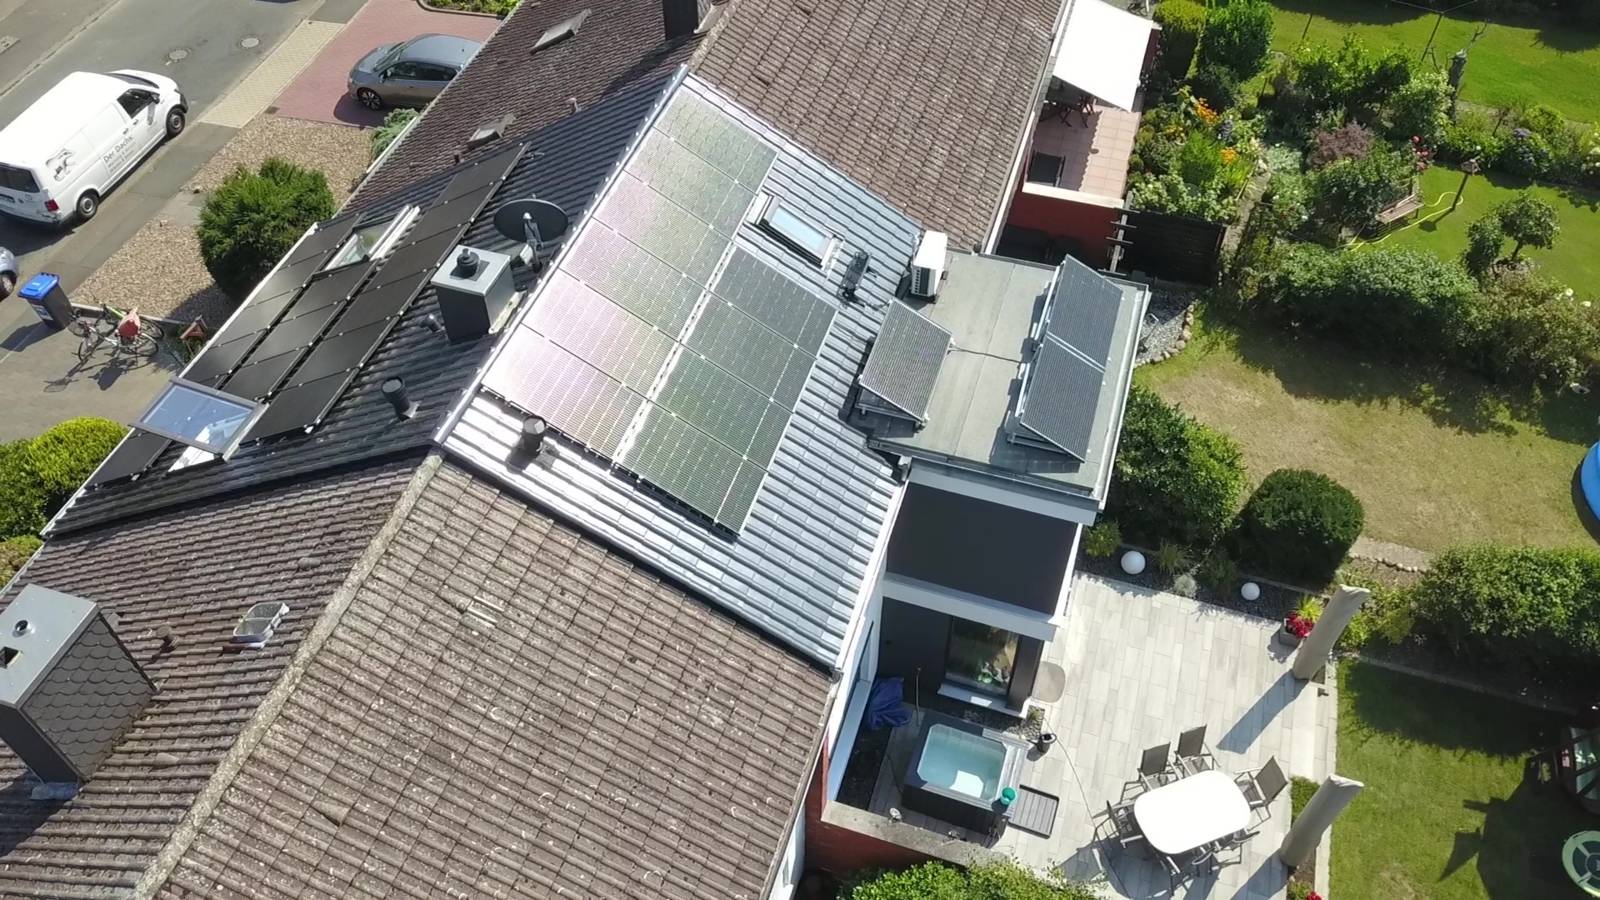 Luftaufnahme von mehreren Hausdächern, auf einem ist eine Photovoltaik-Anlage zu sehen